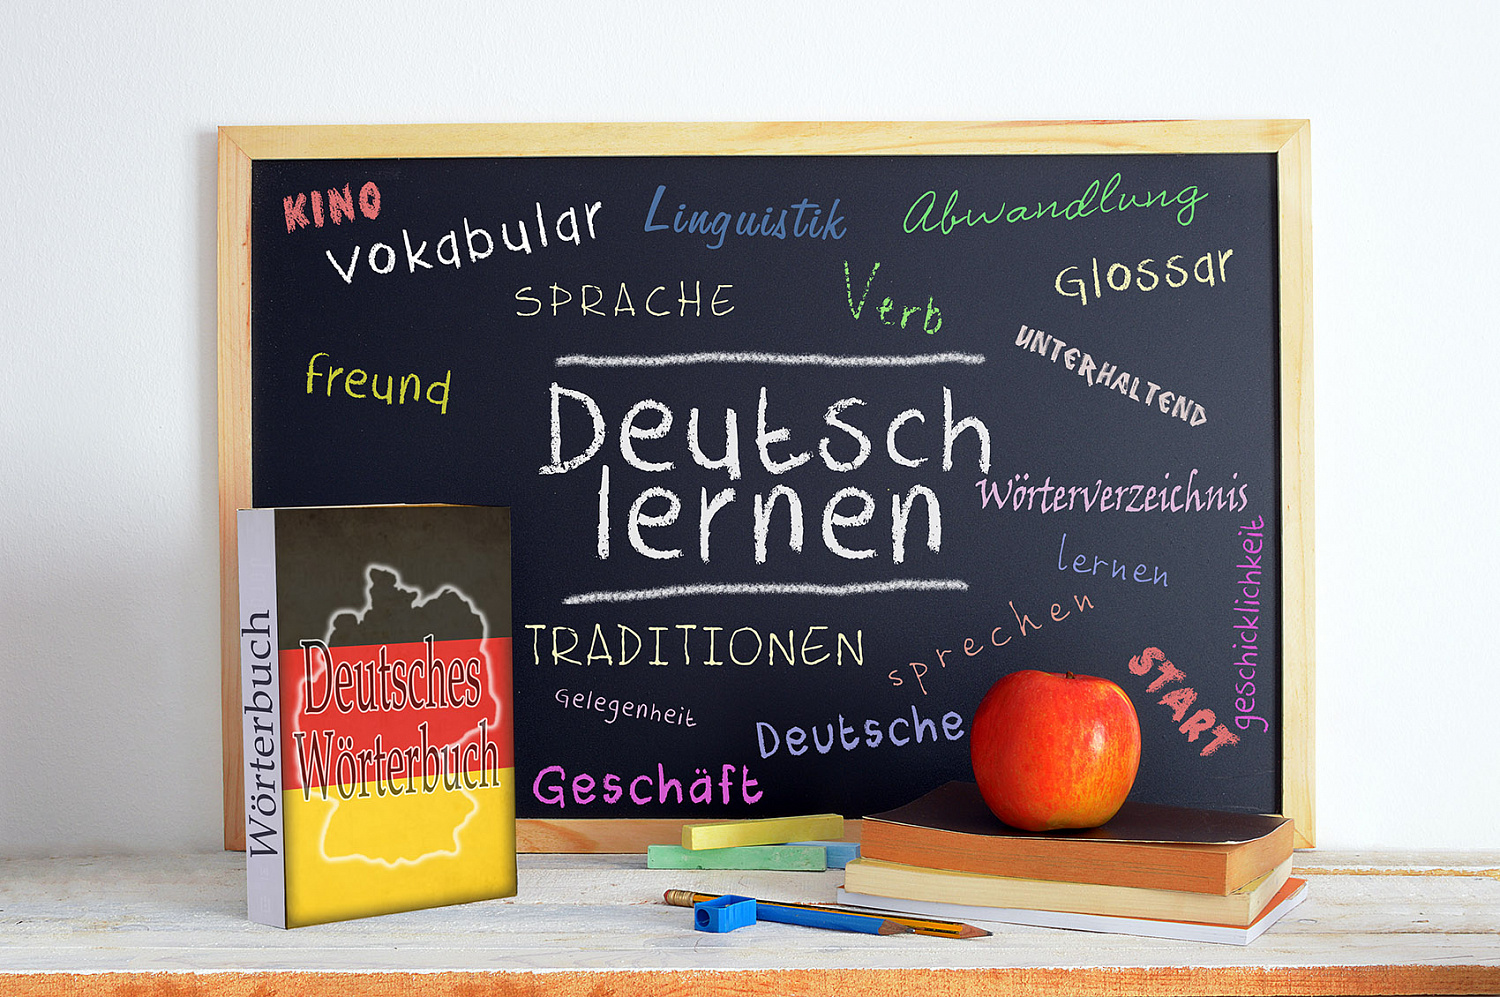 Совершенствование компетенций преподавателя немецкого языка в современной школе